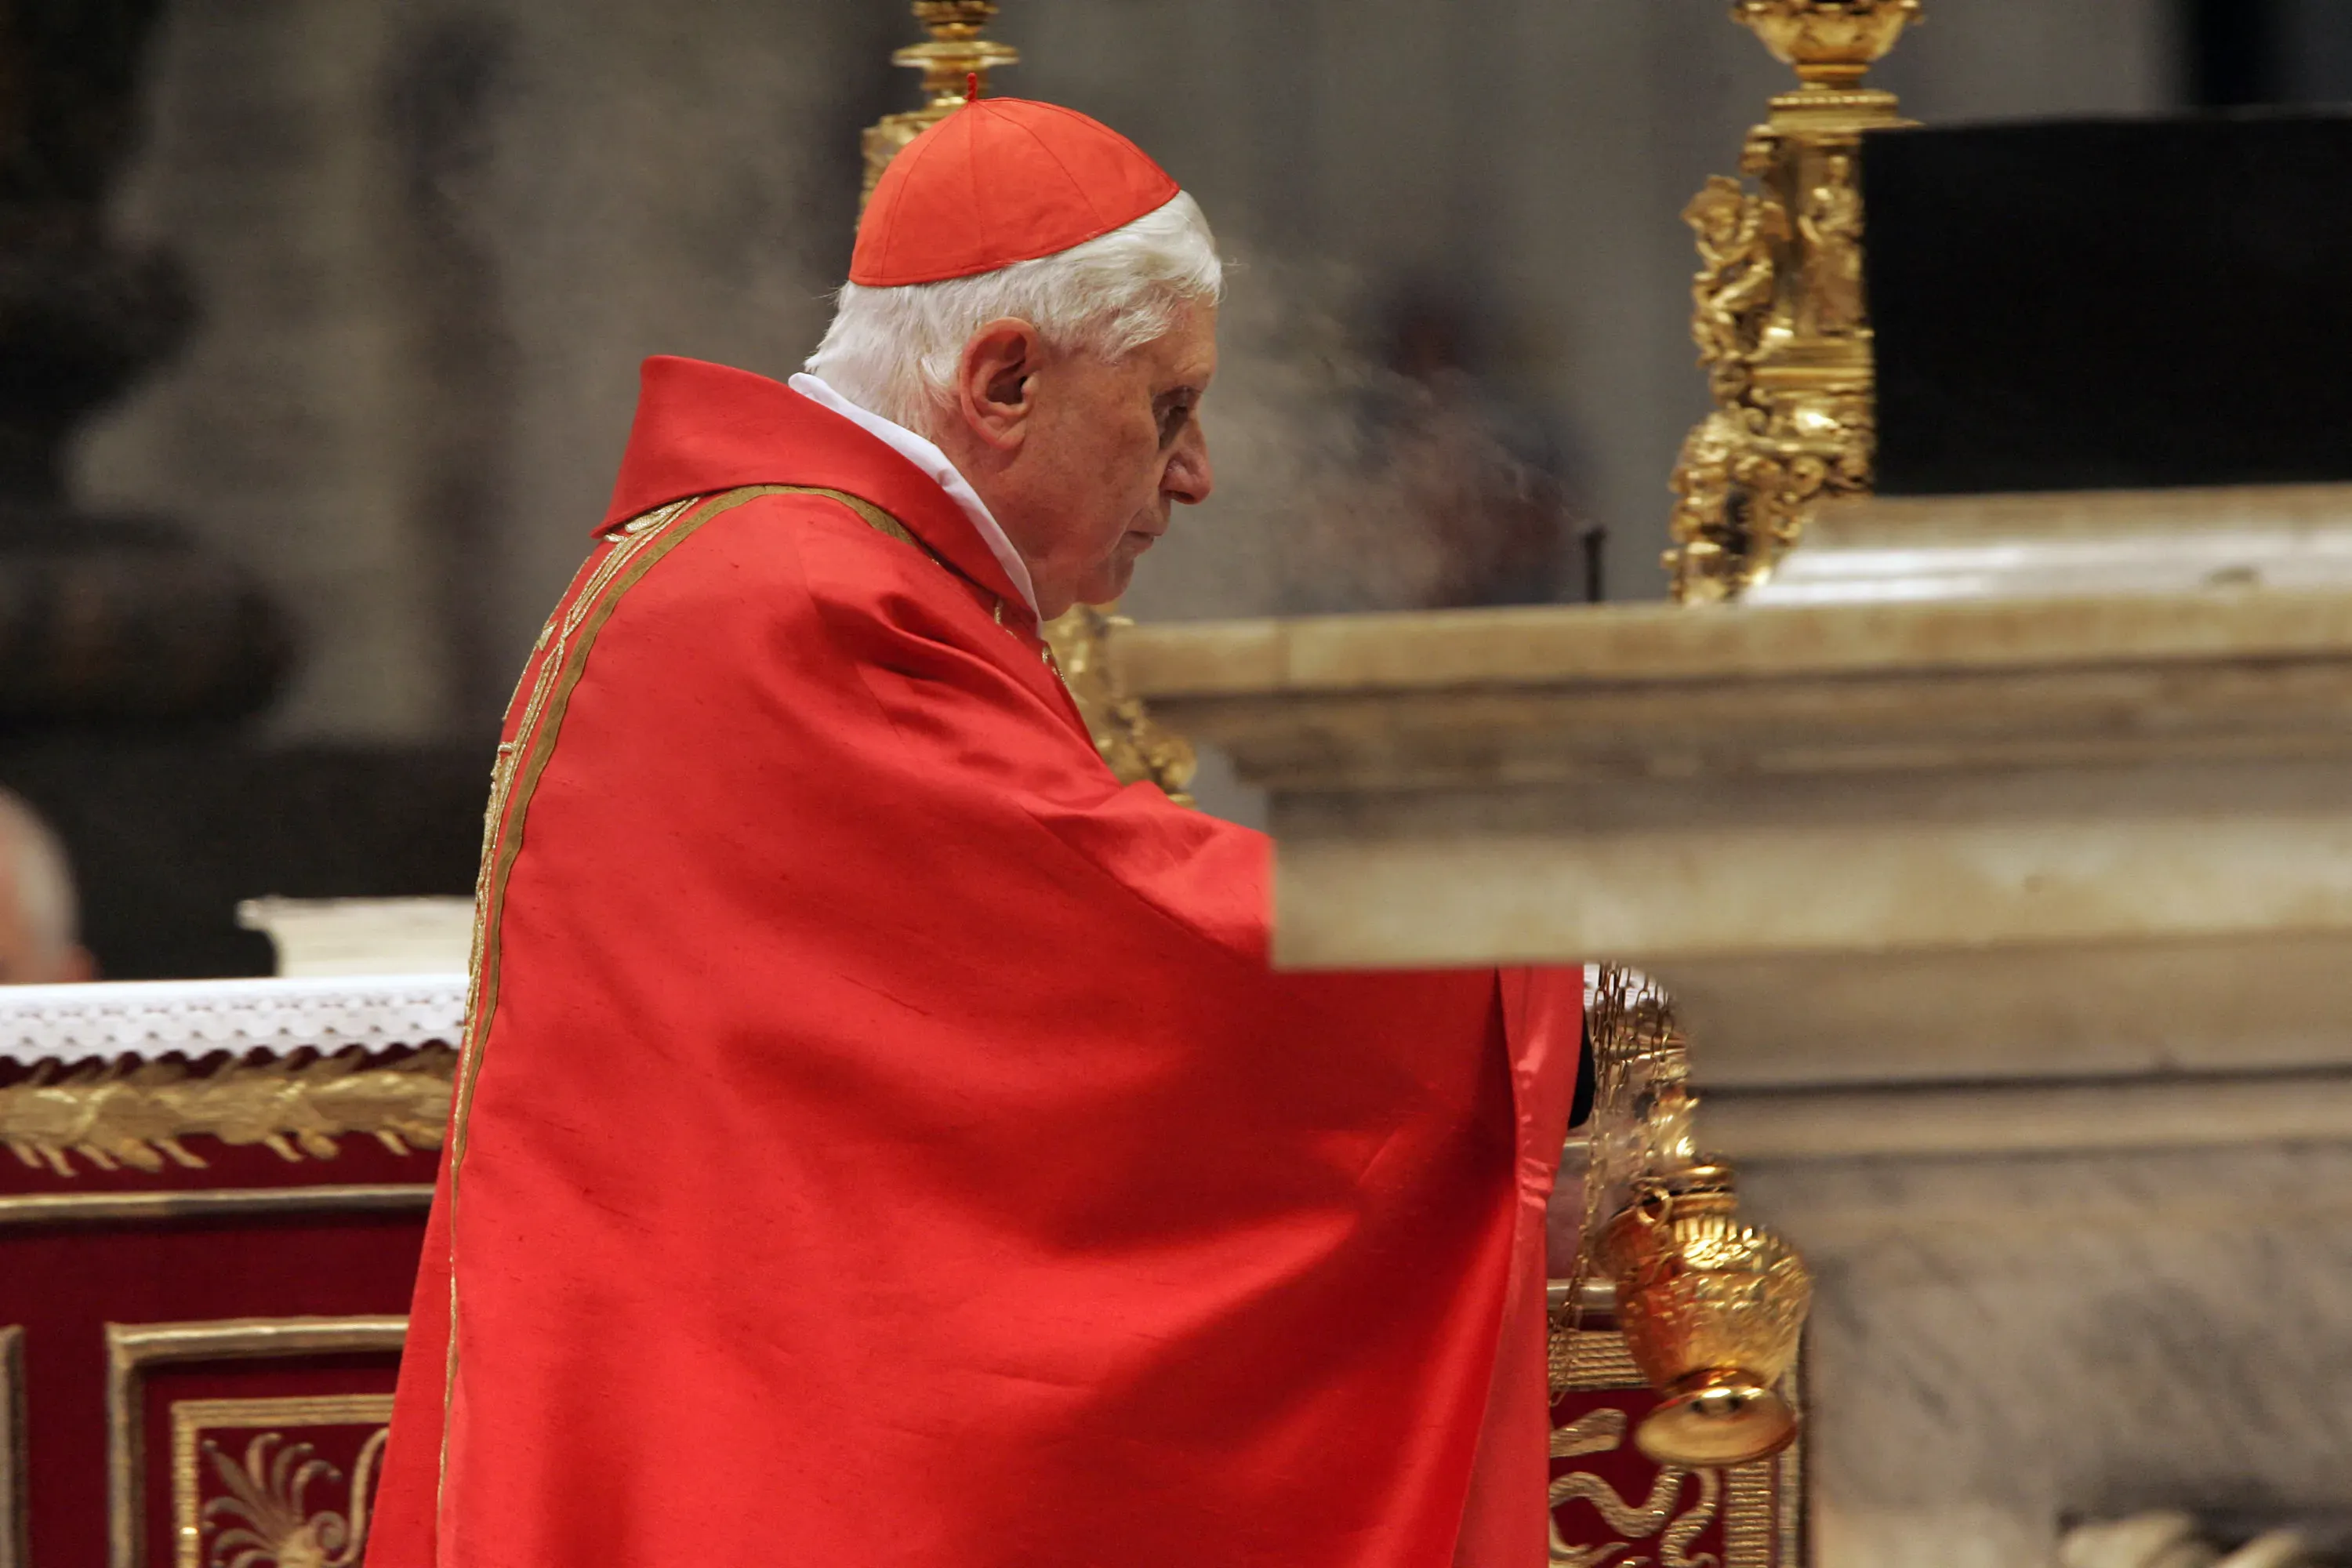 Le cardinal Joseph Ratzinger célèbre la messe spéciale "pro eligendo summo pontifice" (pour élire le souverain pontife) à la basilique Saint-Pierre dans la Cité du Vatican, le 18 avril 2005.